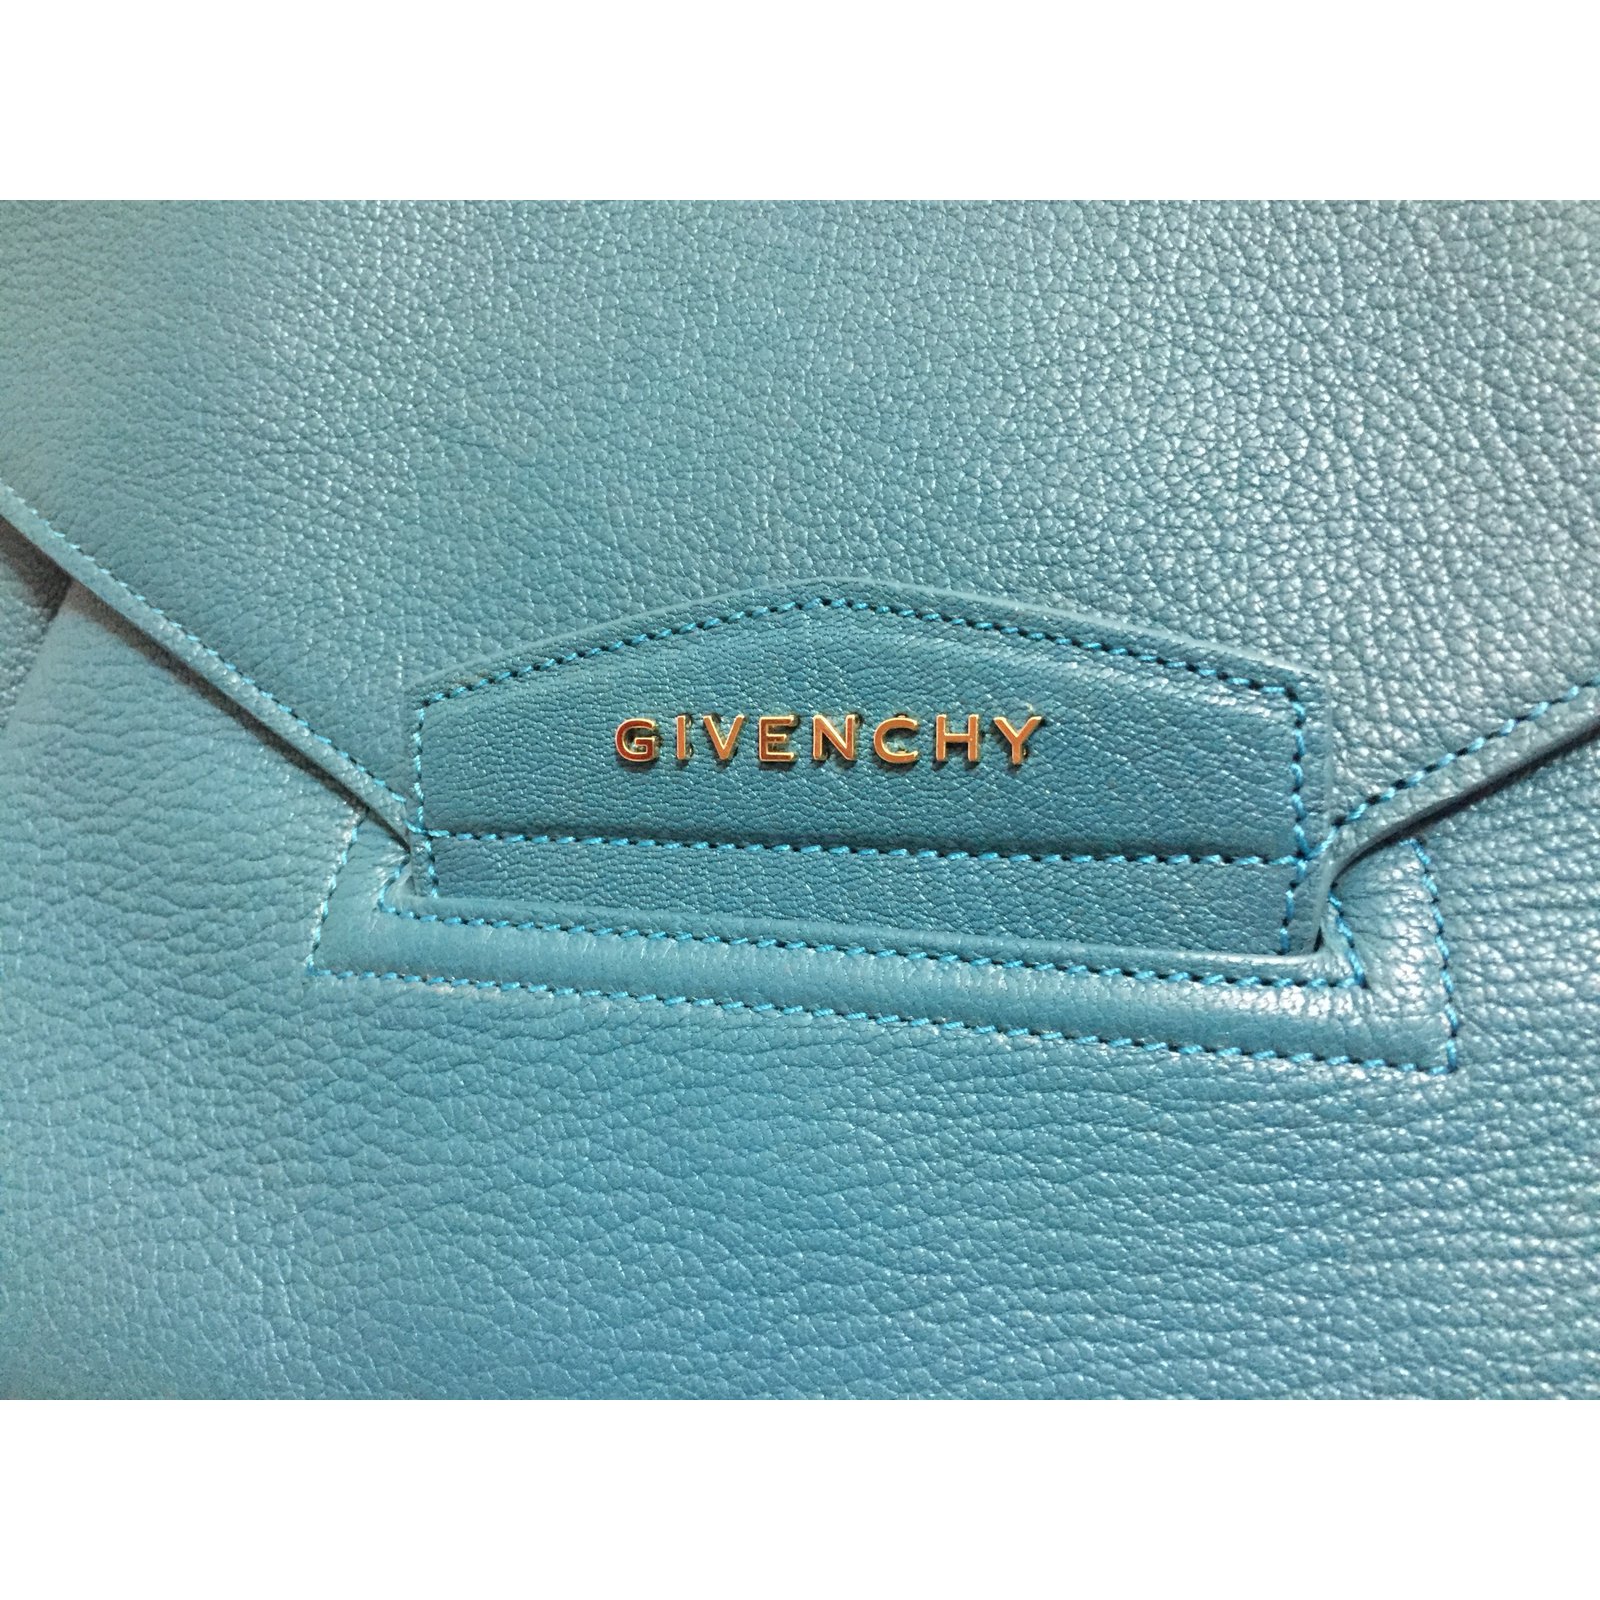 Givenchy ANTIGONA ENVELOPE BLU OTTANIO NEW WITH dustbag Blue